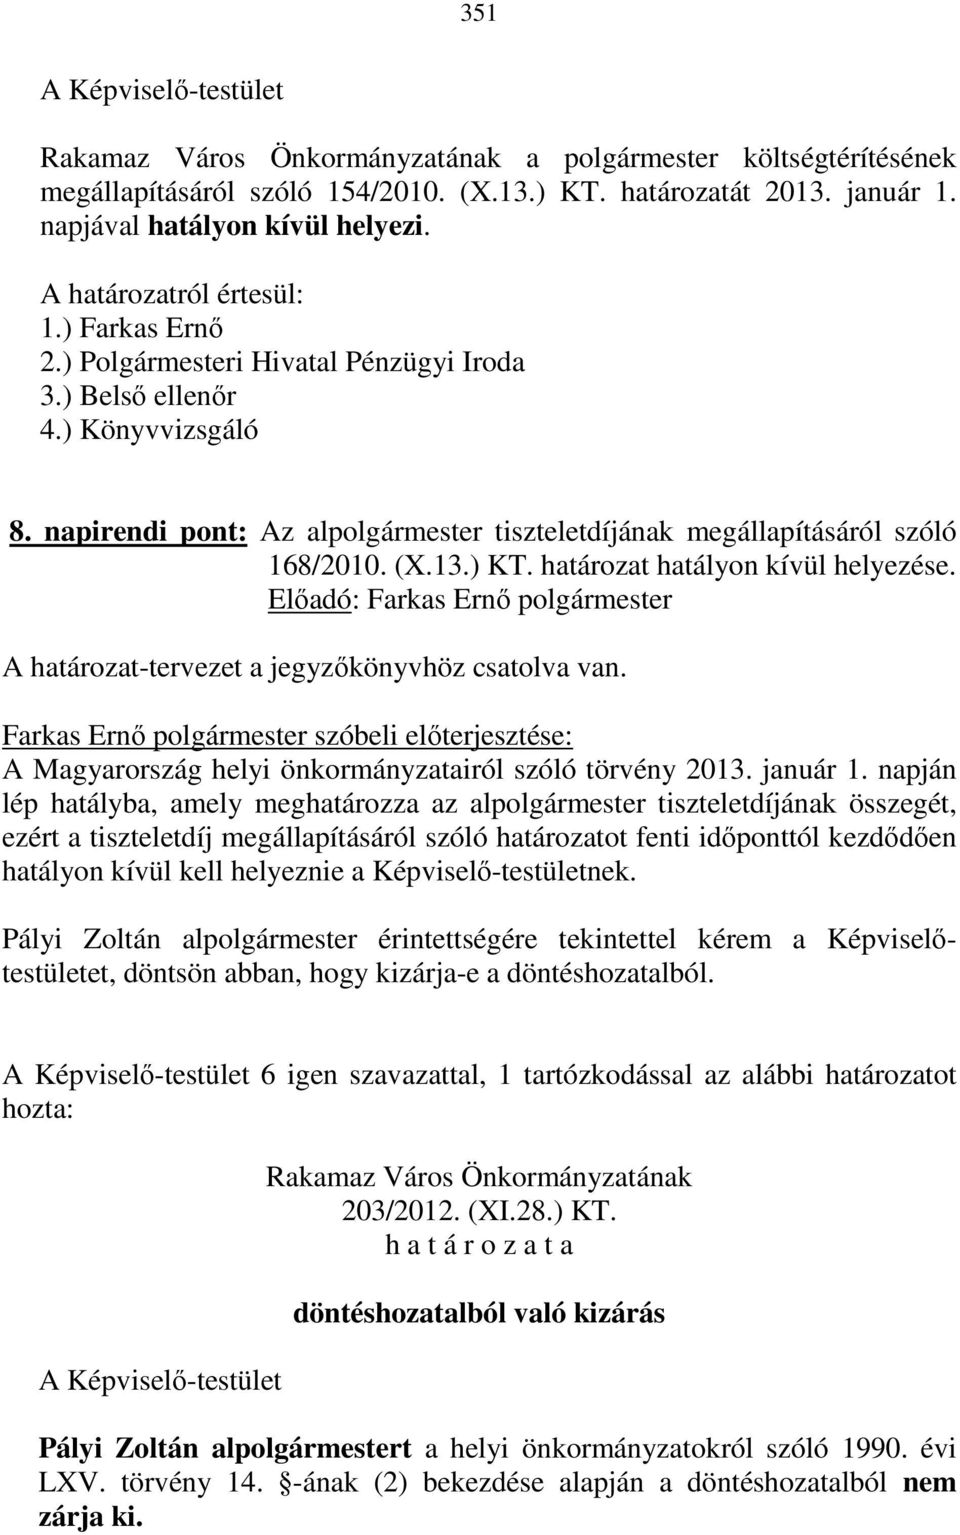 A határozat-tervezet a jegyzőkönyvhöz csatolva van. Farkas Ernő polgármester szóbeli előterjesztése: A Magyarország helyi önkormányzatairól szóló törvény 2013. január 1.